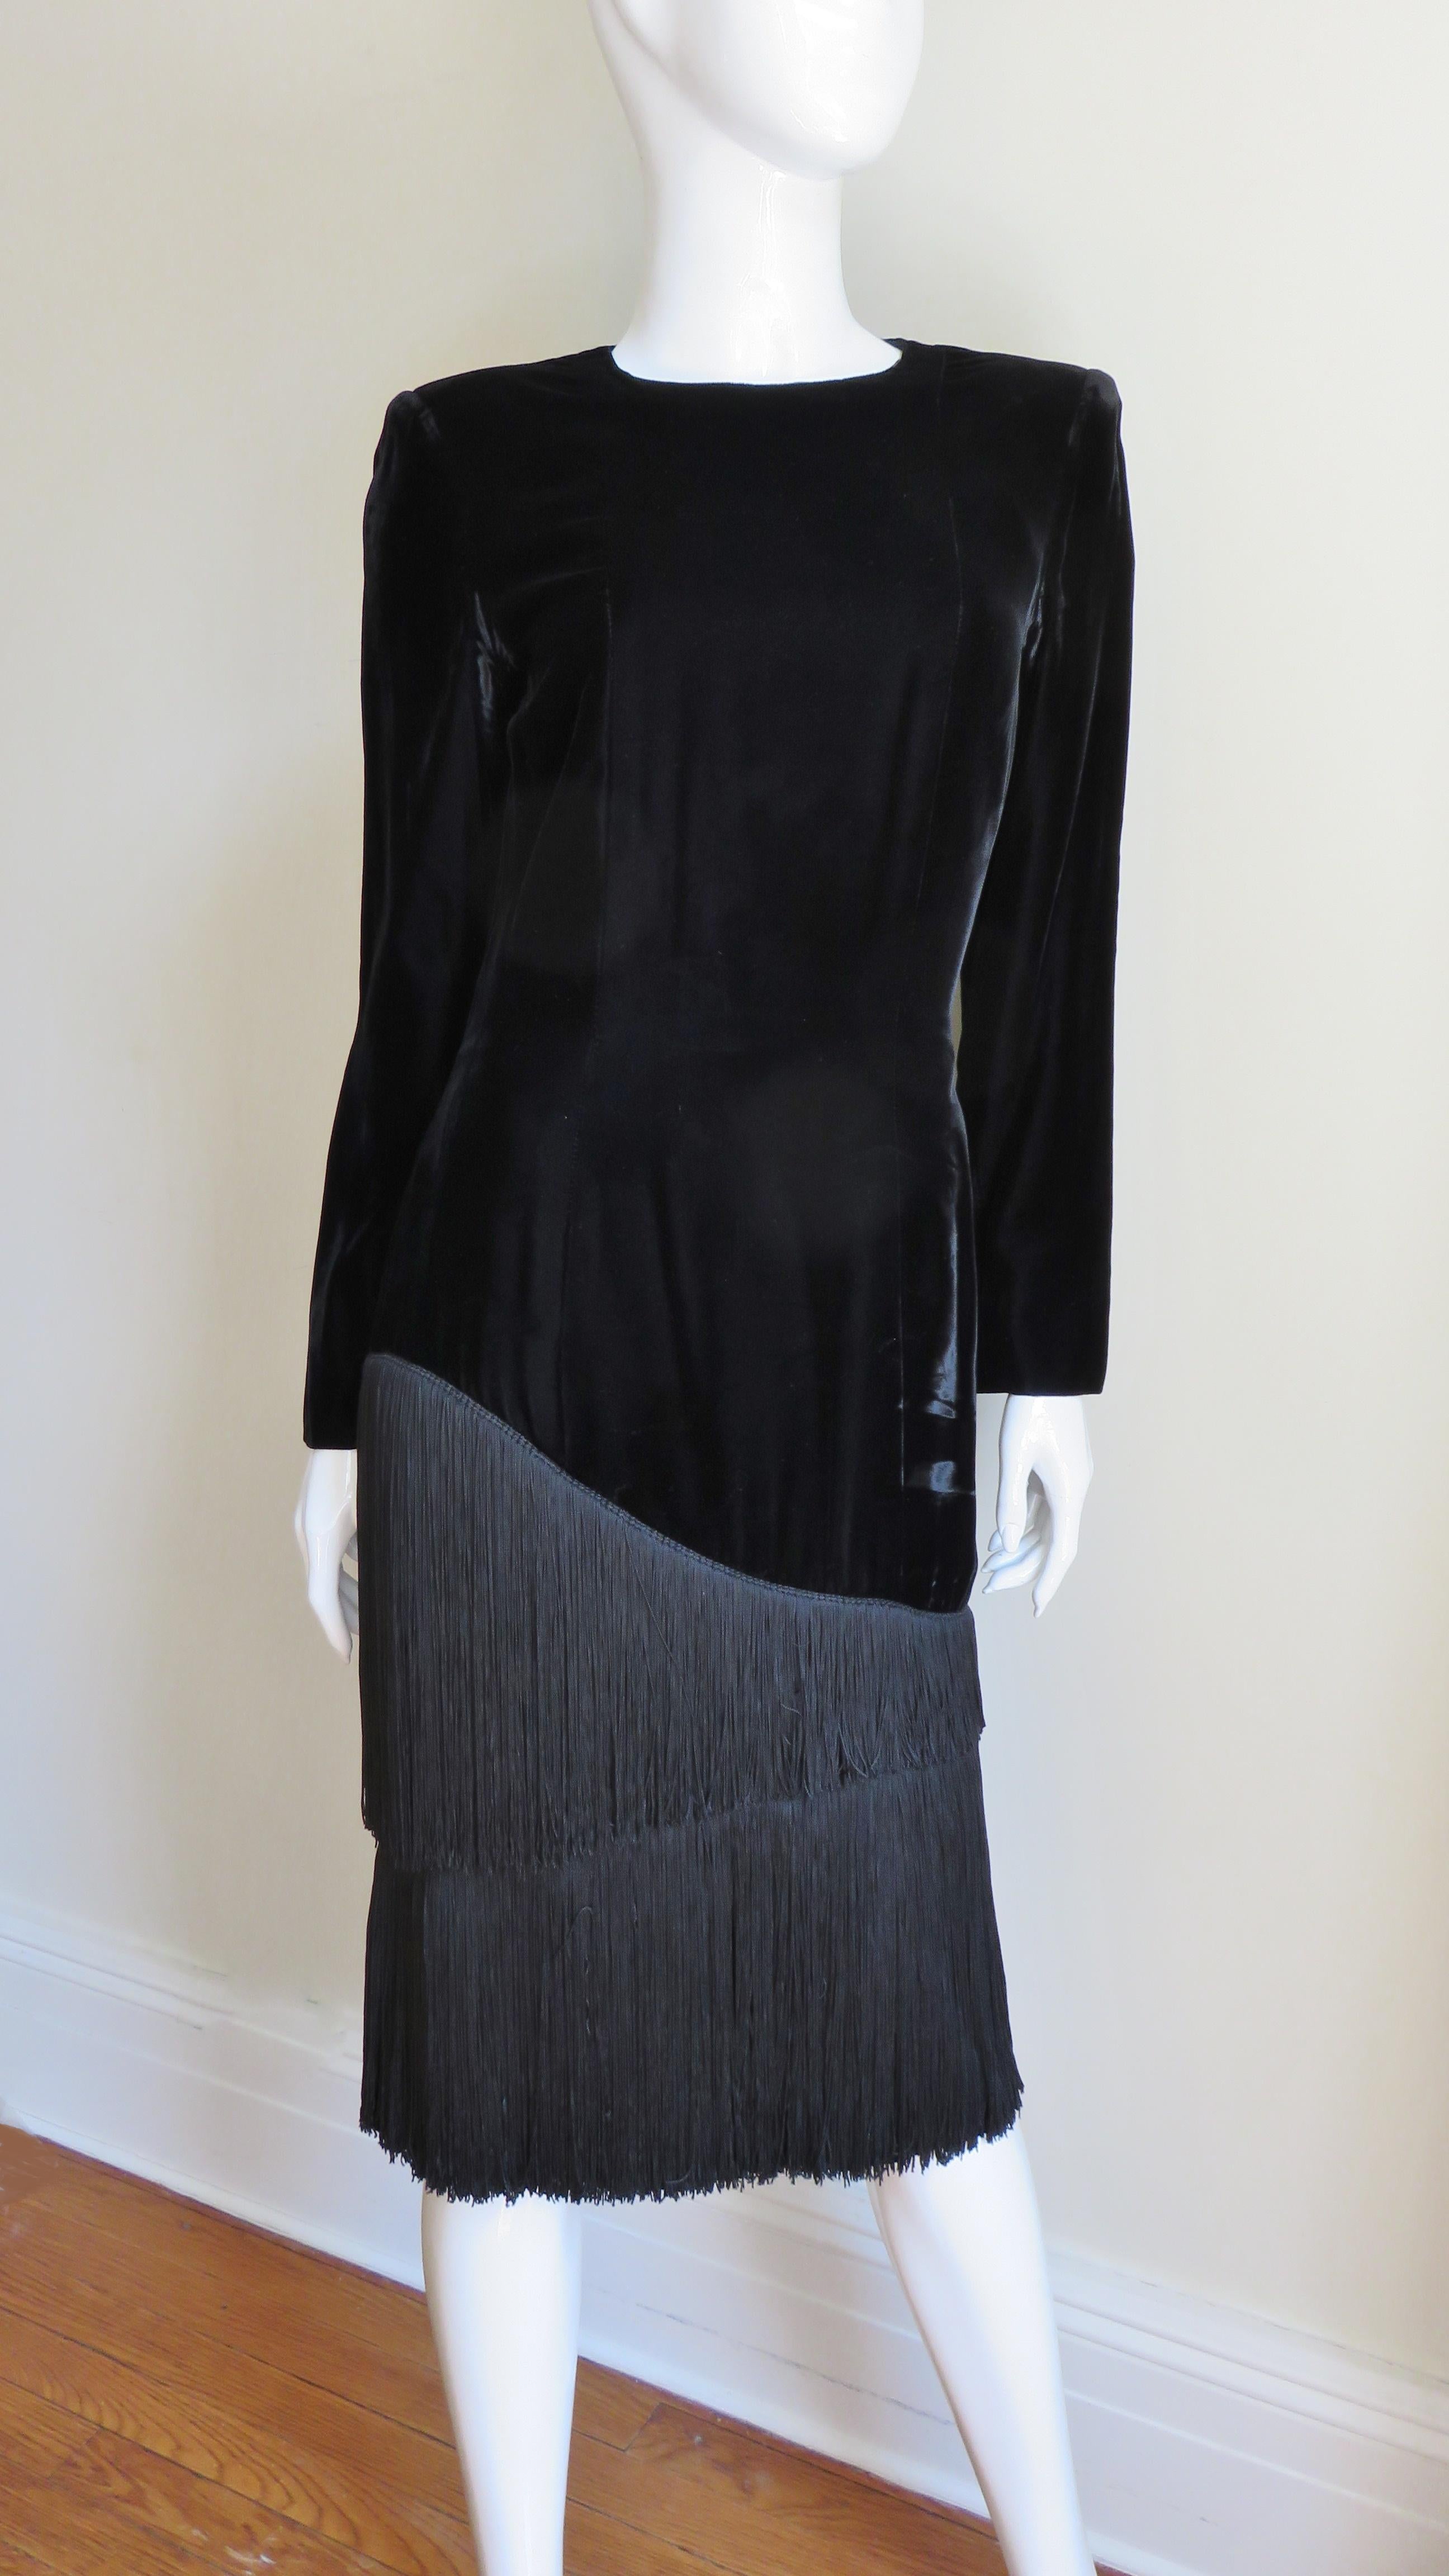 Ein fabelhaftes schwarzes Samtkleid von Lanvin. Es ist ein einfaches langärmeliges Kleid mit Rundhalsausschnitt, das in der Taille halb tailliert ist und gerade zum Saum fällt. Eine Reihe von abgestuften 11-13